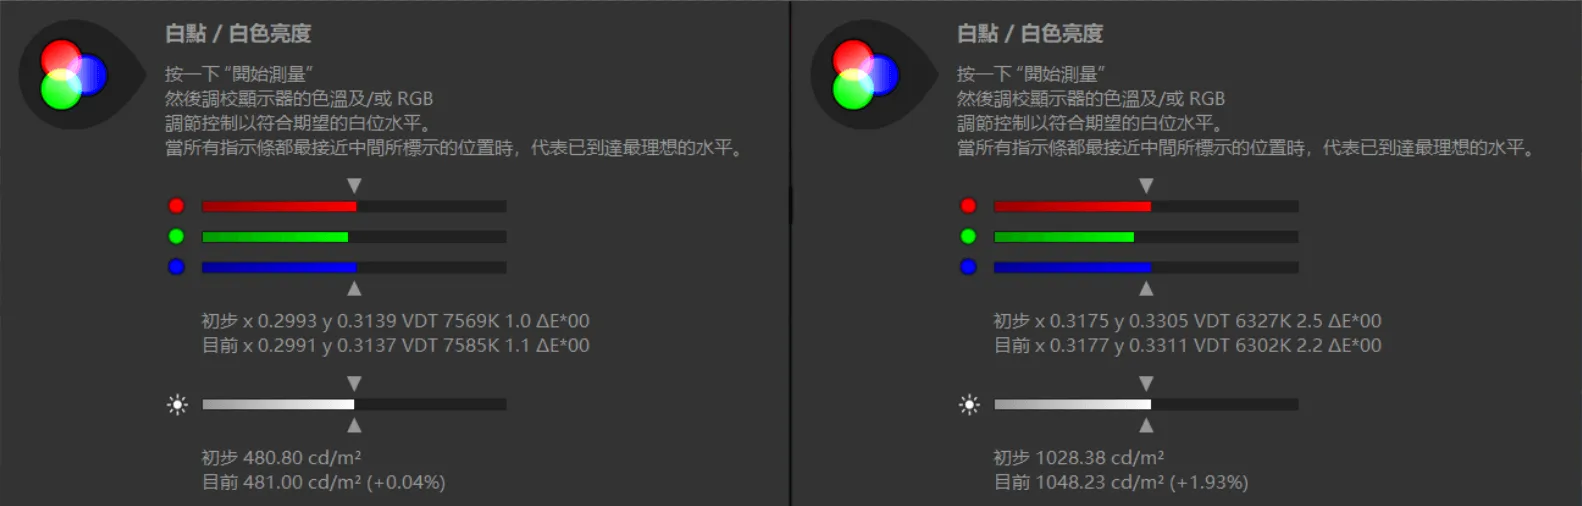 Xiaomi Mi 12 Pro detailed evaluation